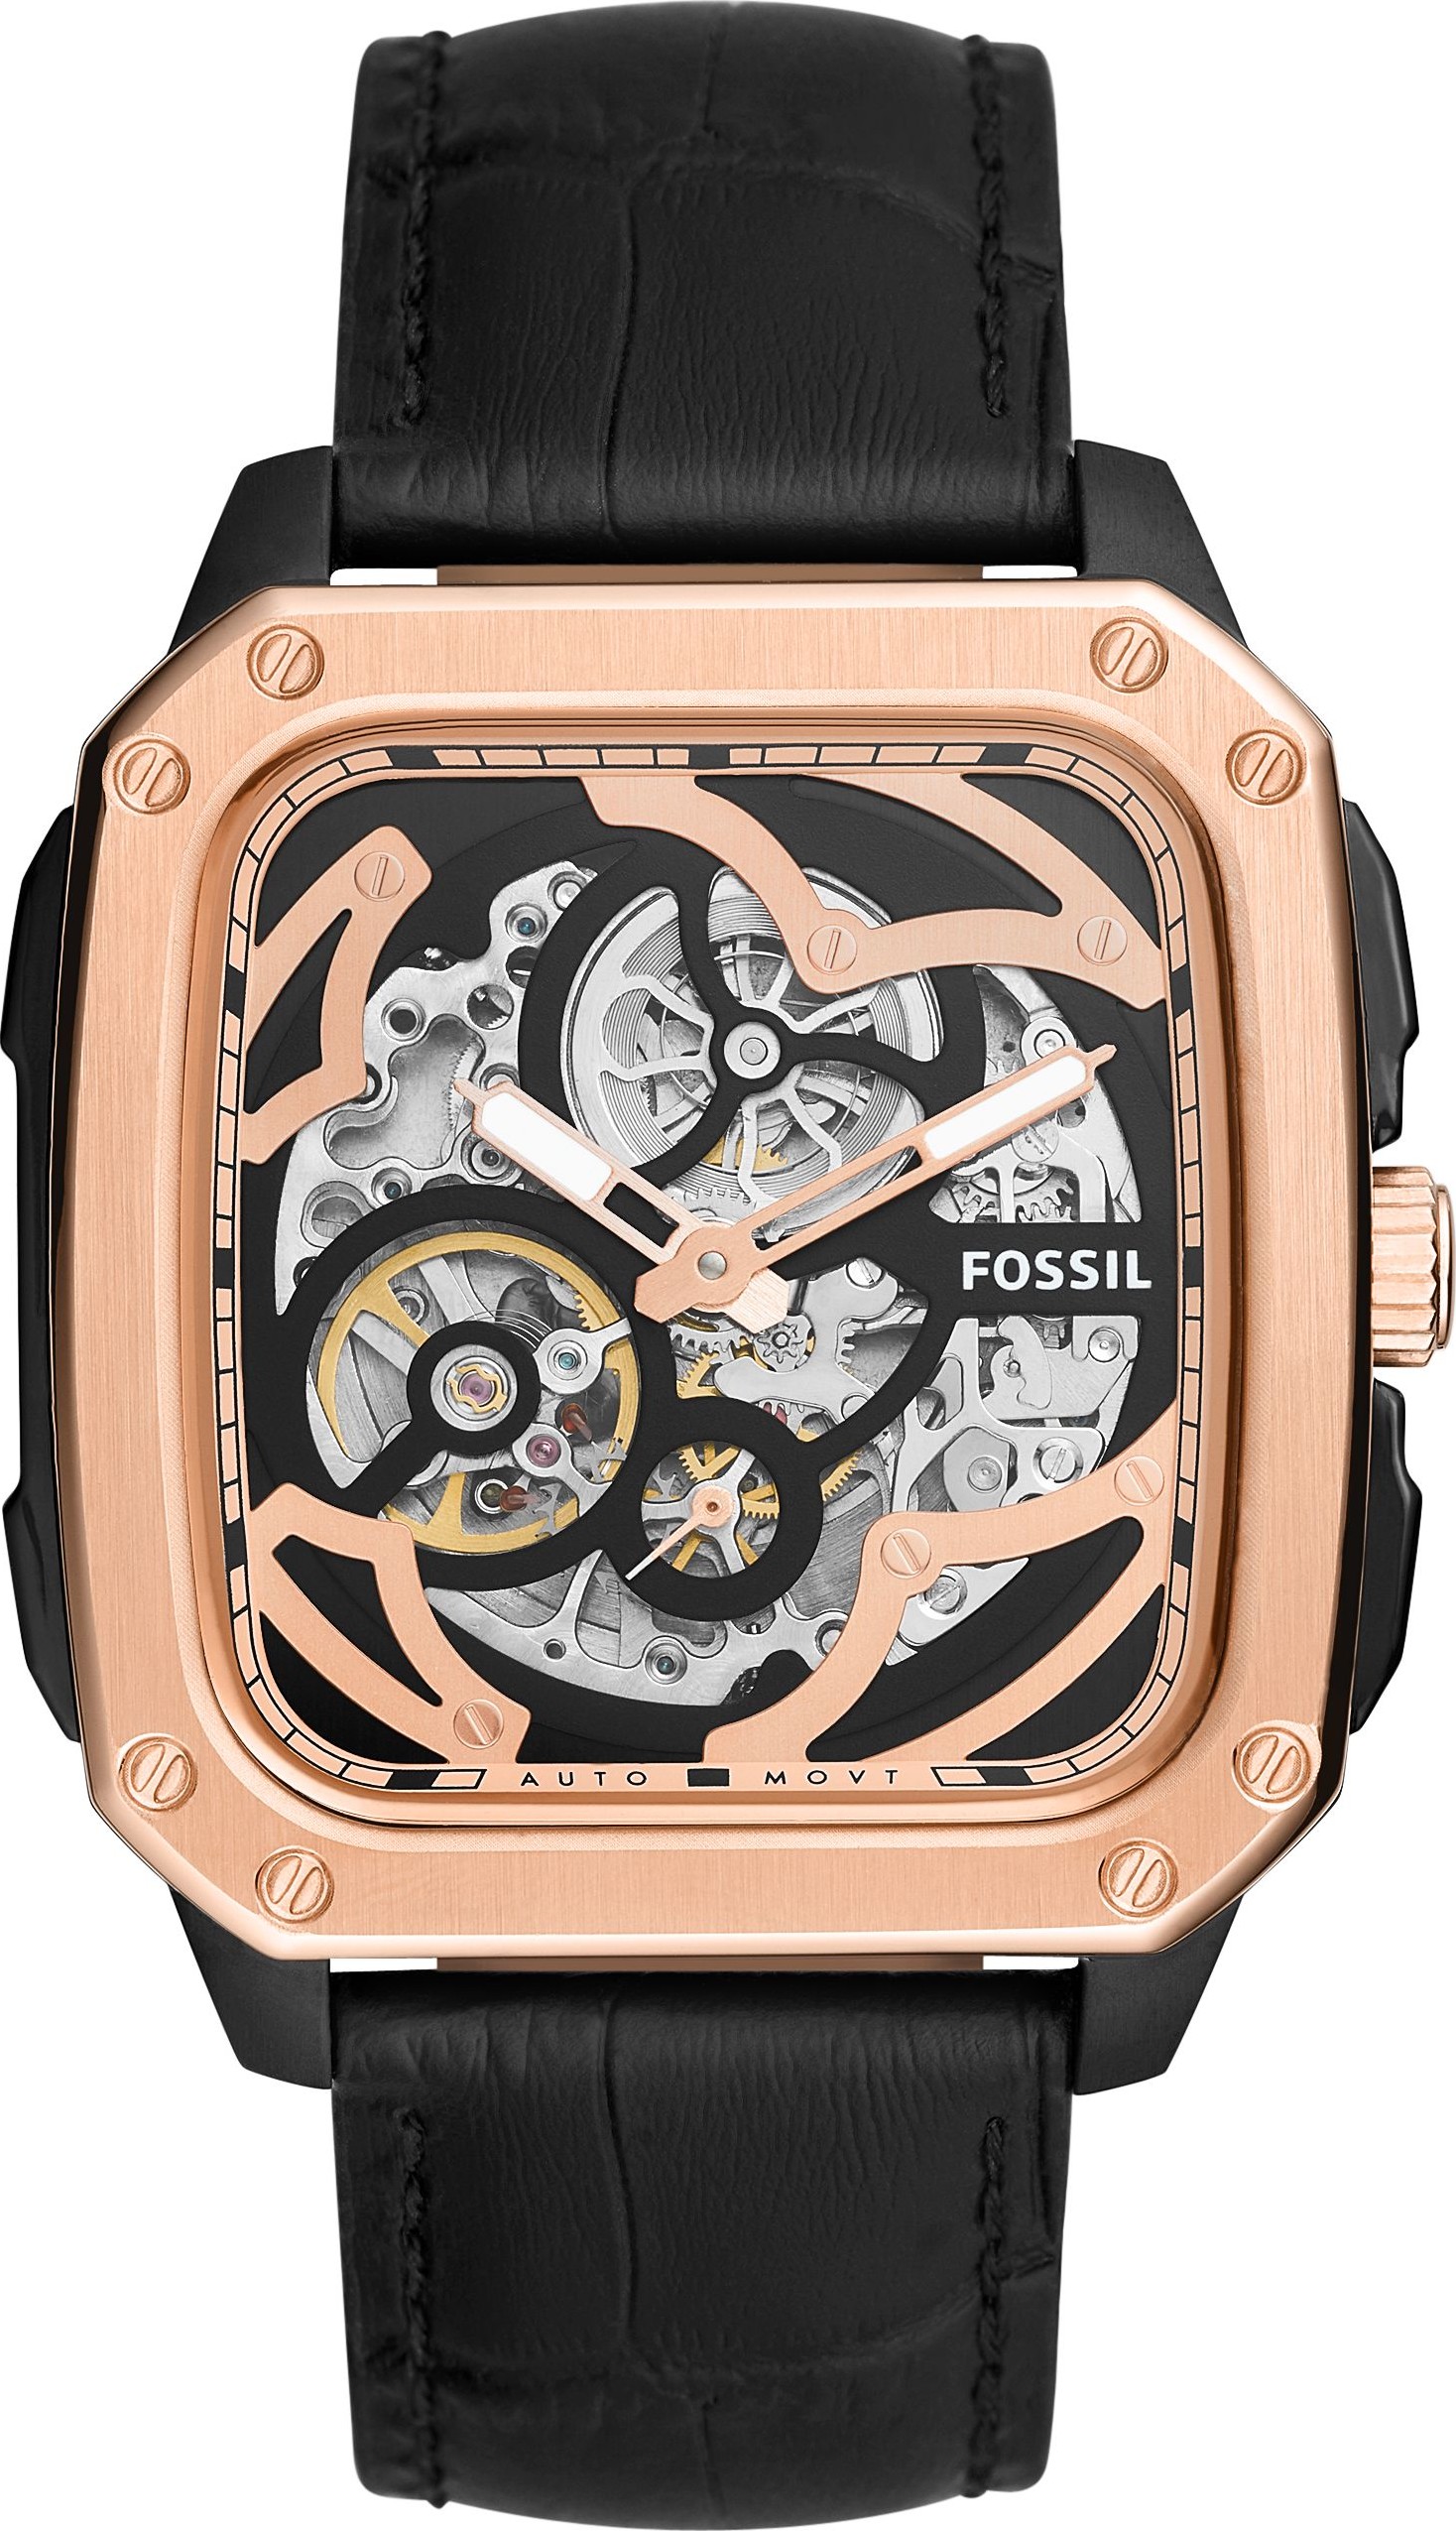 Discover 135+ fossil watch models best - vietkidsiq.edu.vn